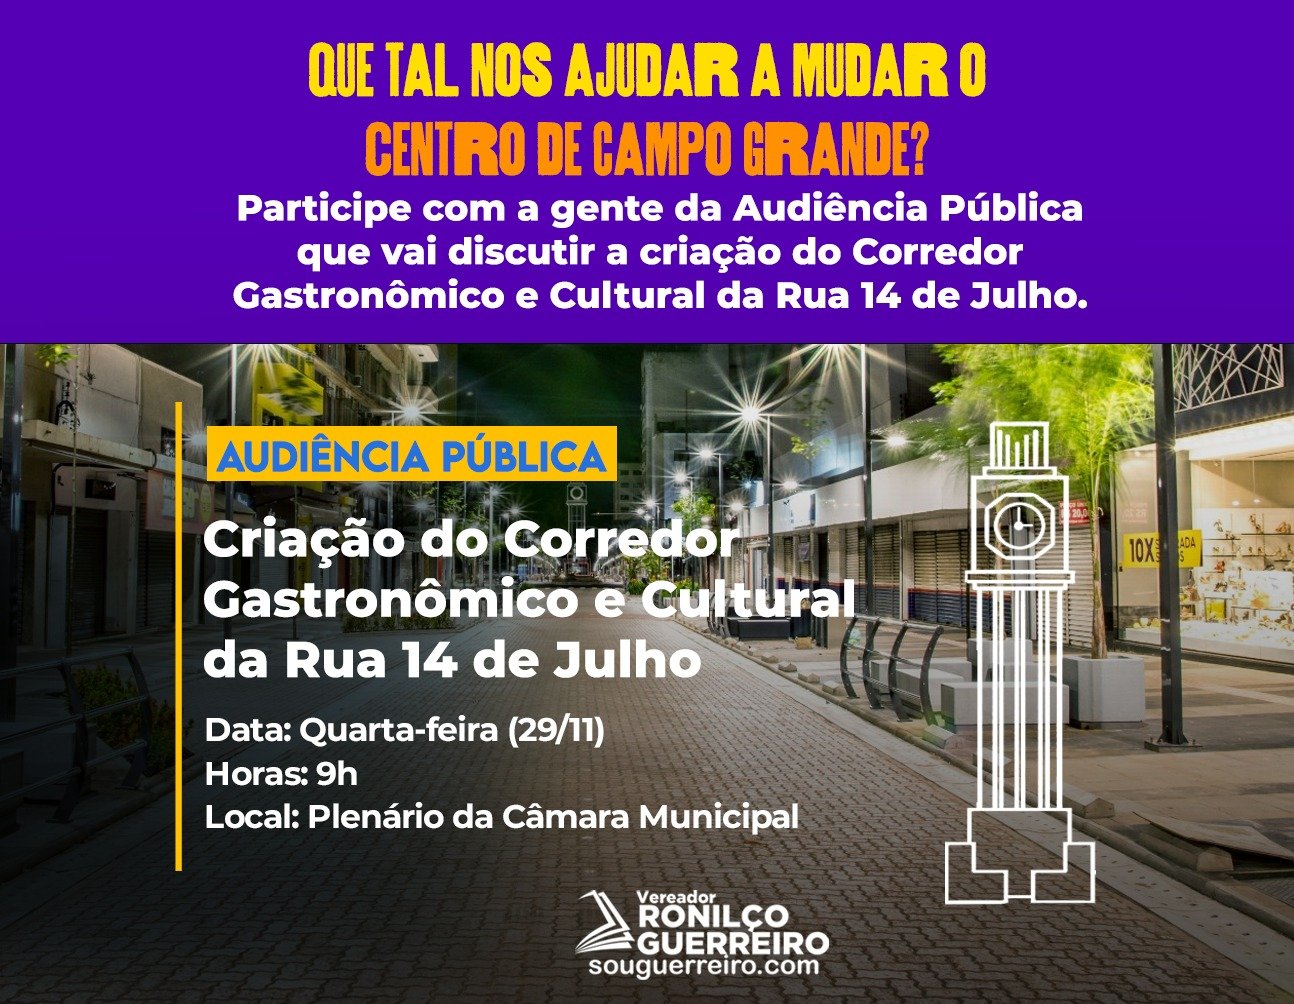 Audiência Pública convocada por Ronilço Guerreiro vai discutir Corredor Gastronômico, Turístico e Cultural da 14 de Julho